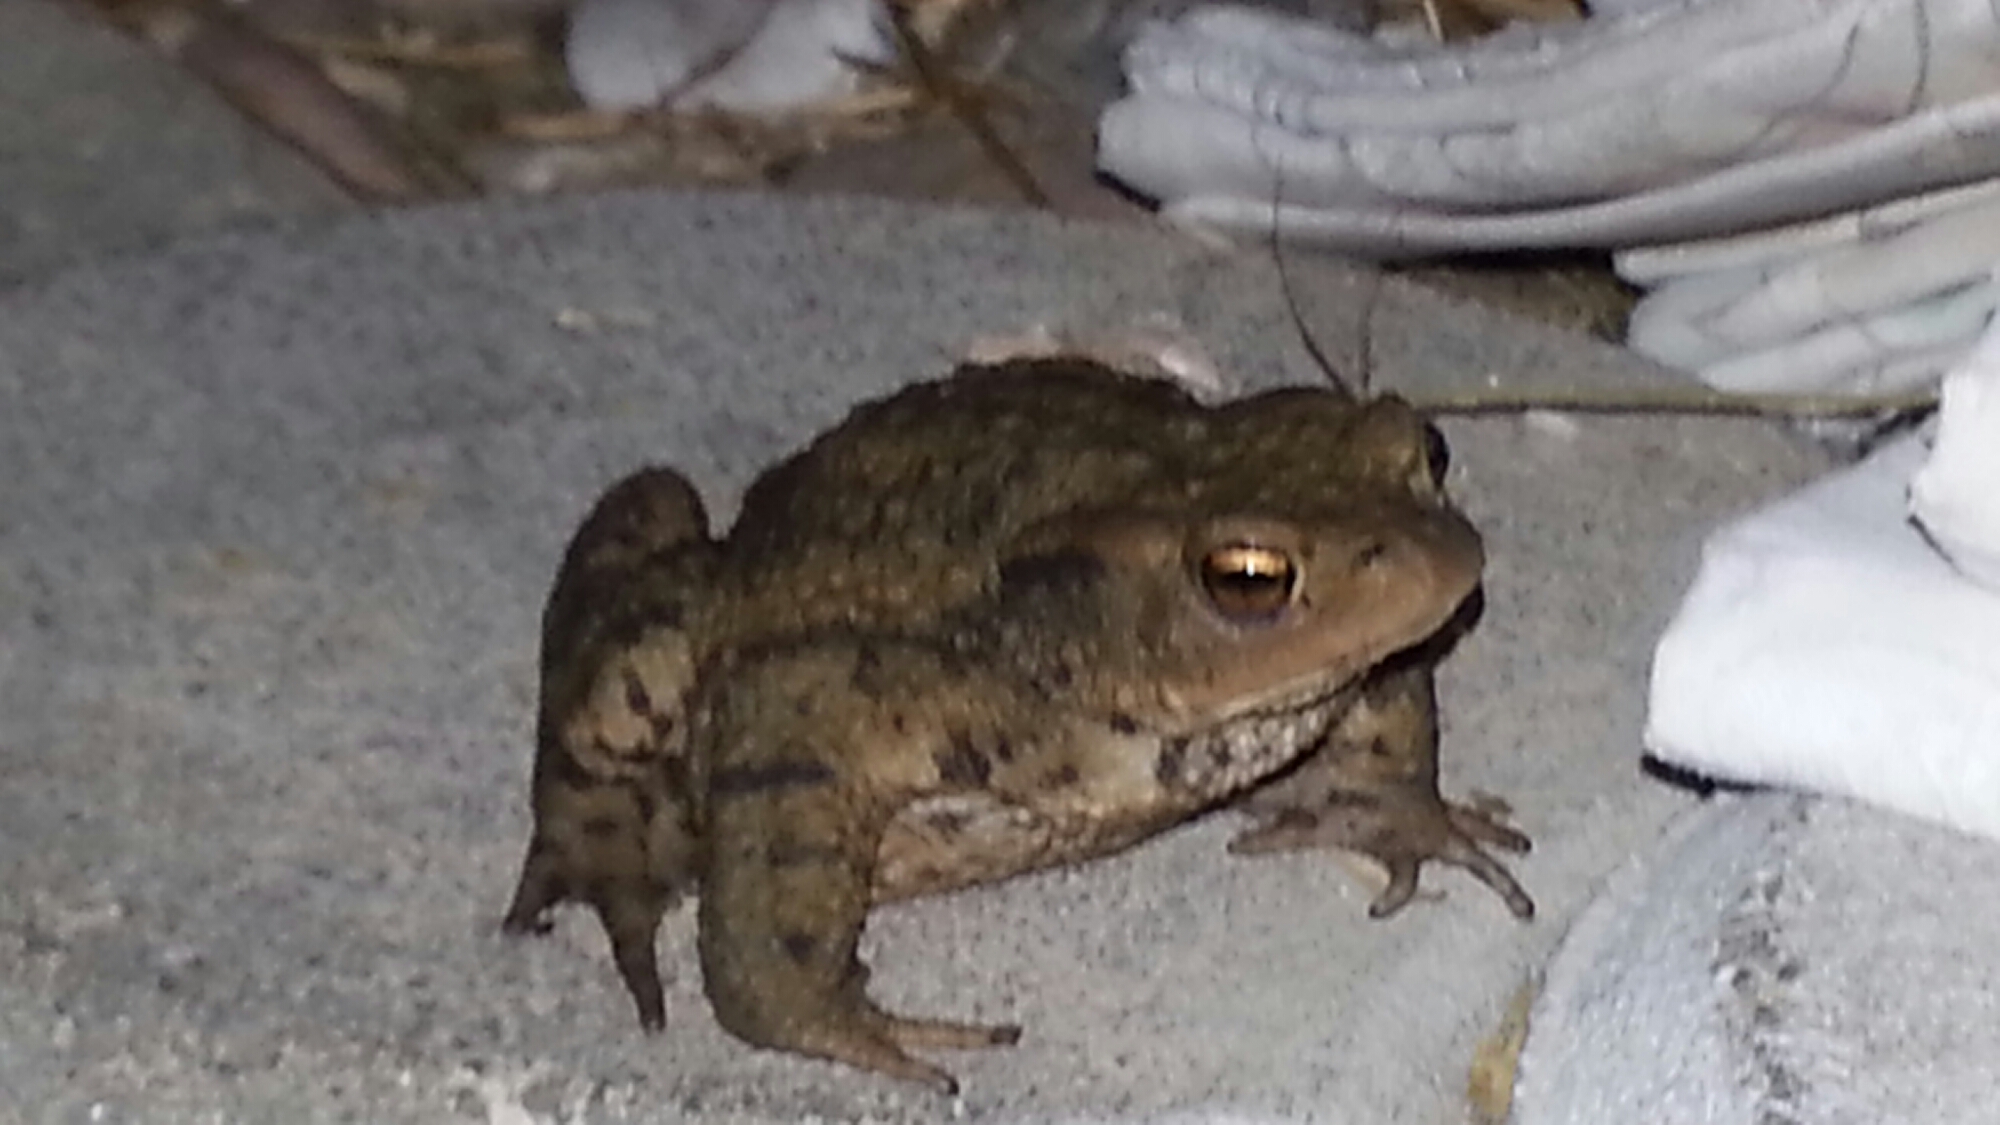 Frosch oder Kröte? Abendlicher Besuch auf der Terrasse - Kategorien: Satire Tiere  wpid-20140713_221527